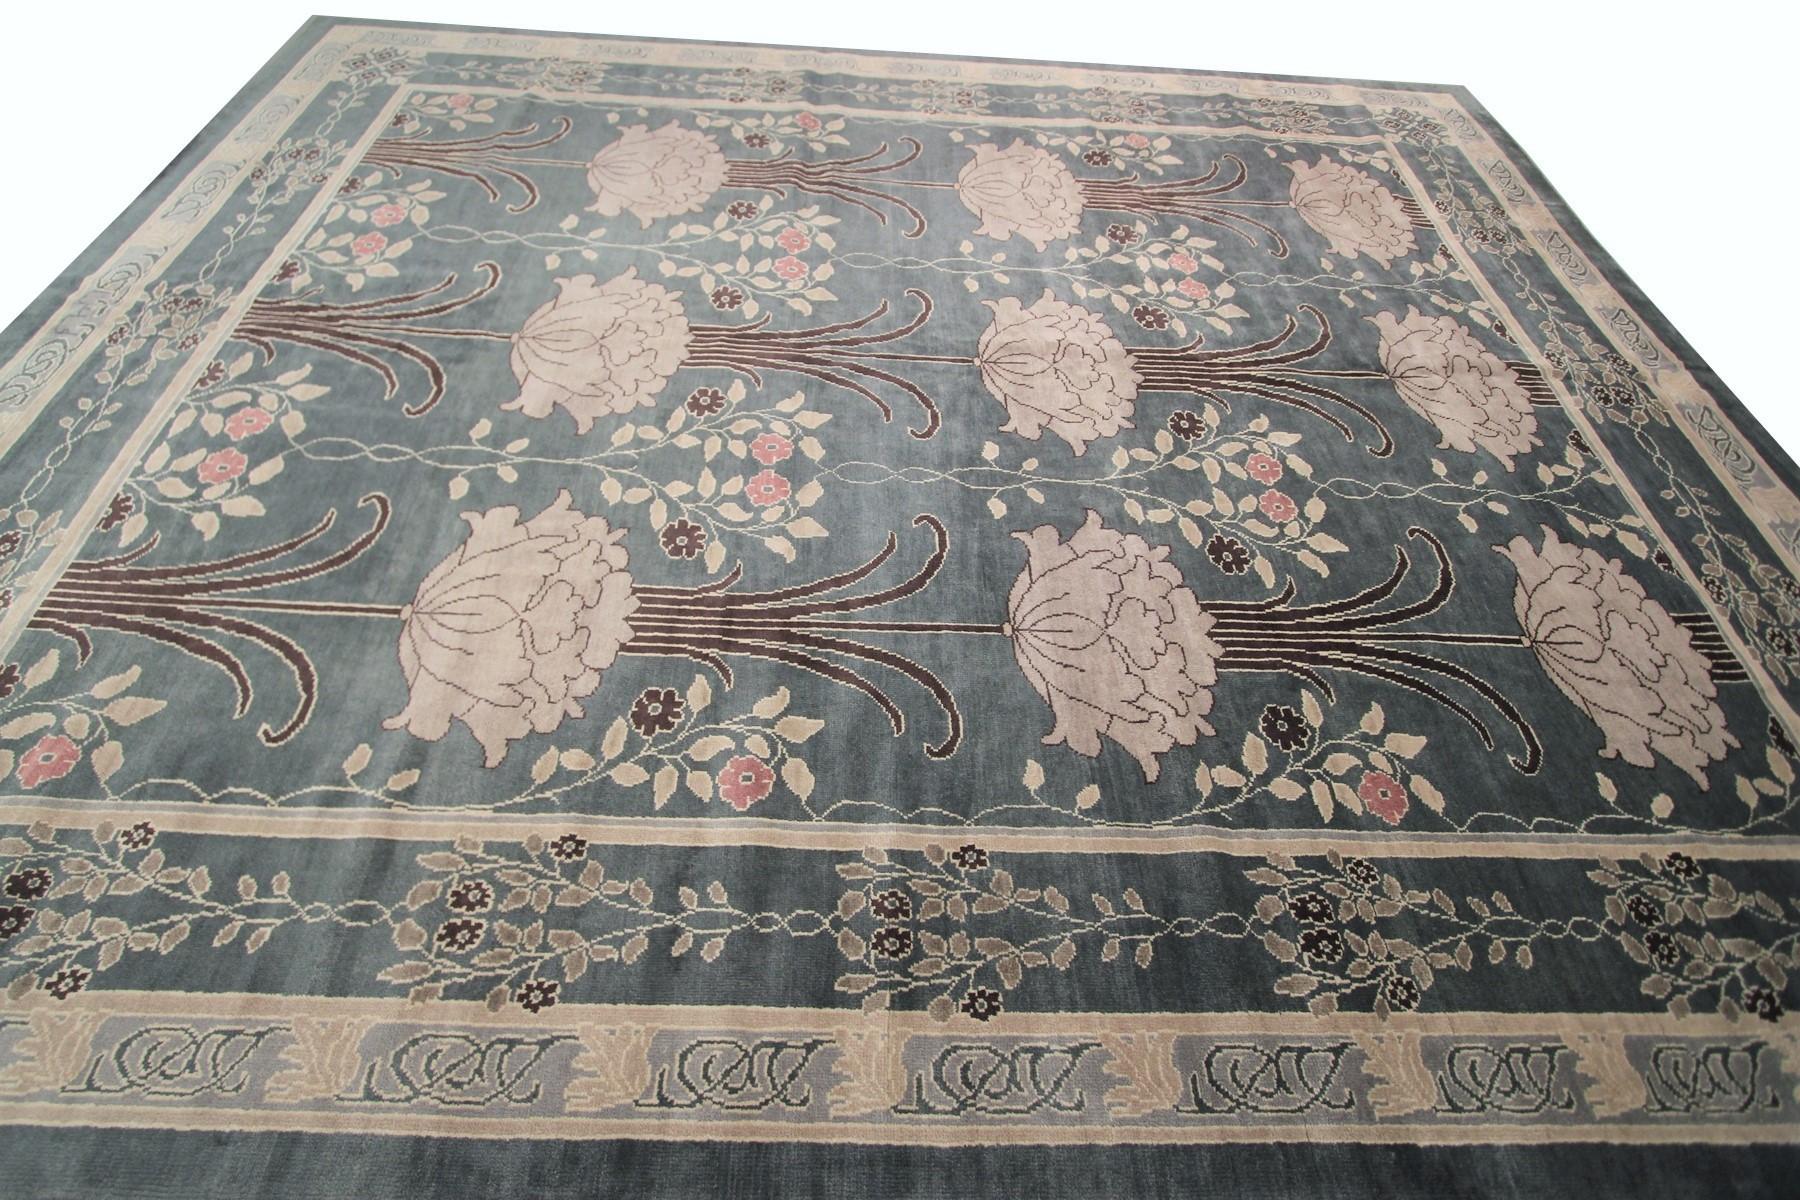 william morris arts and crafts rugs